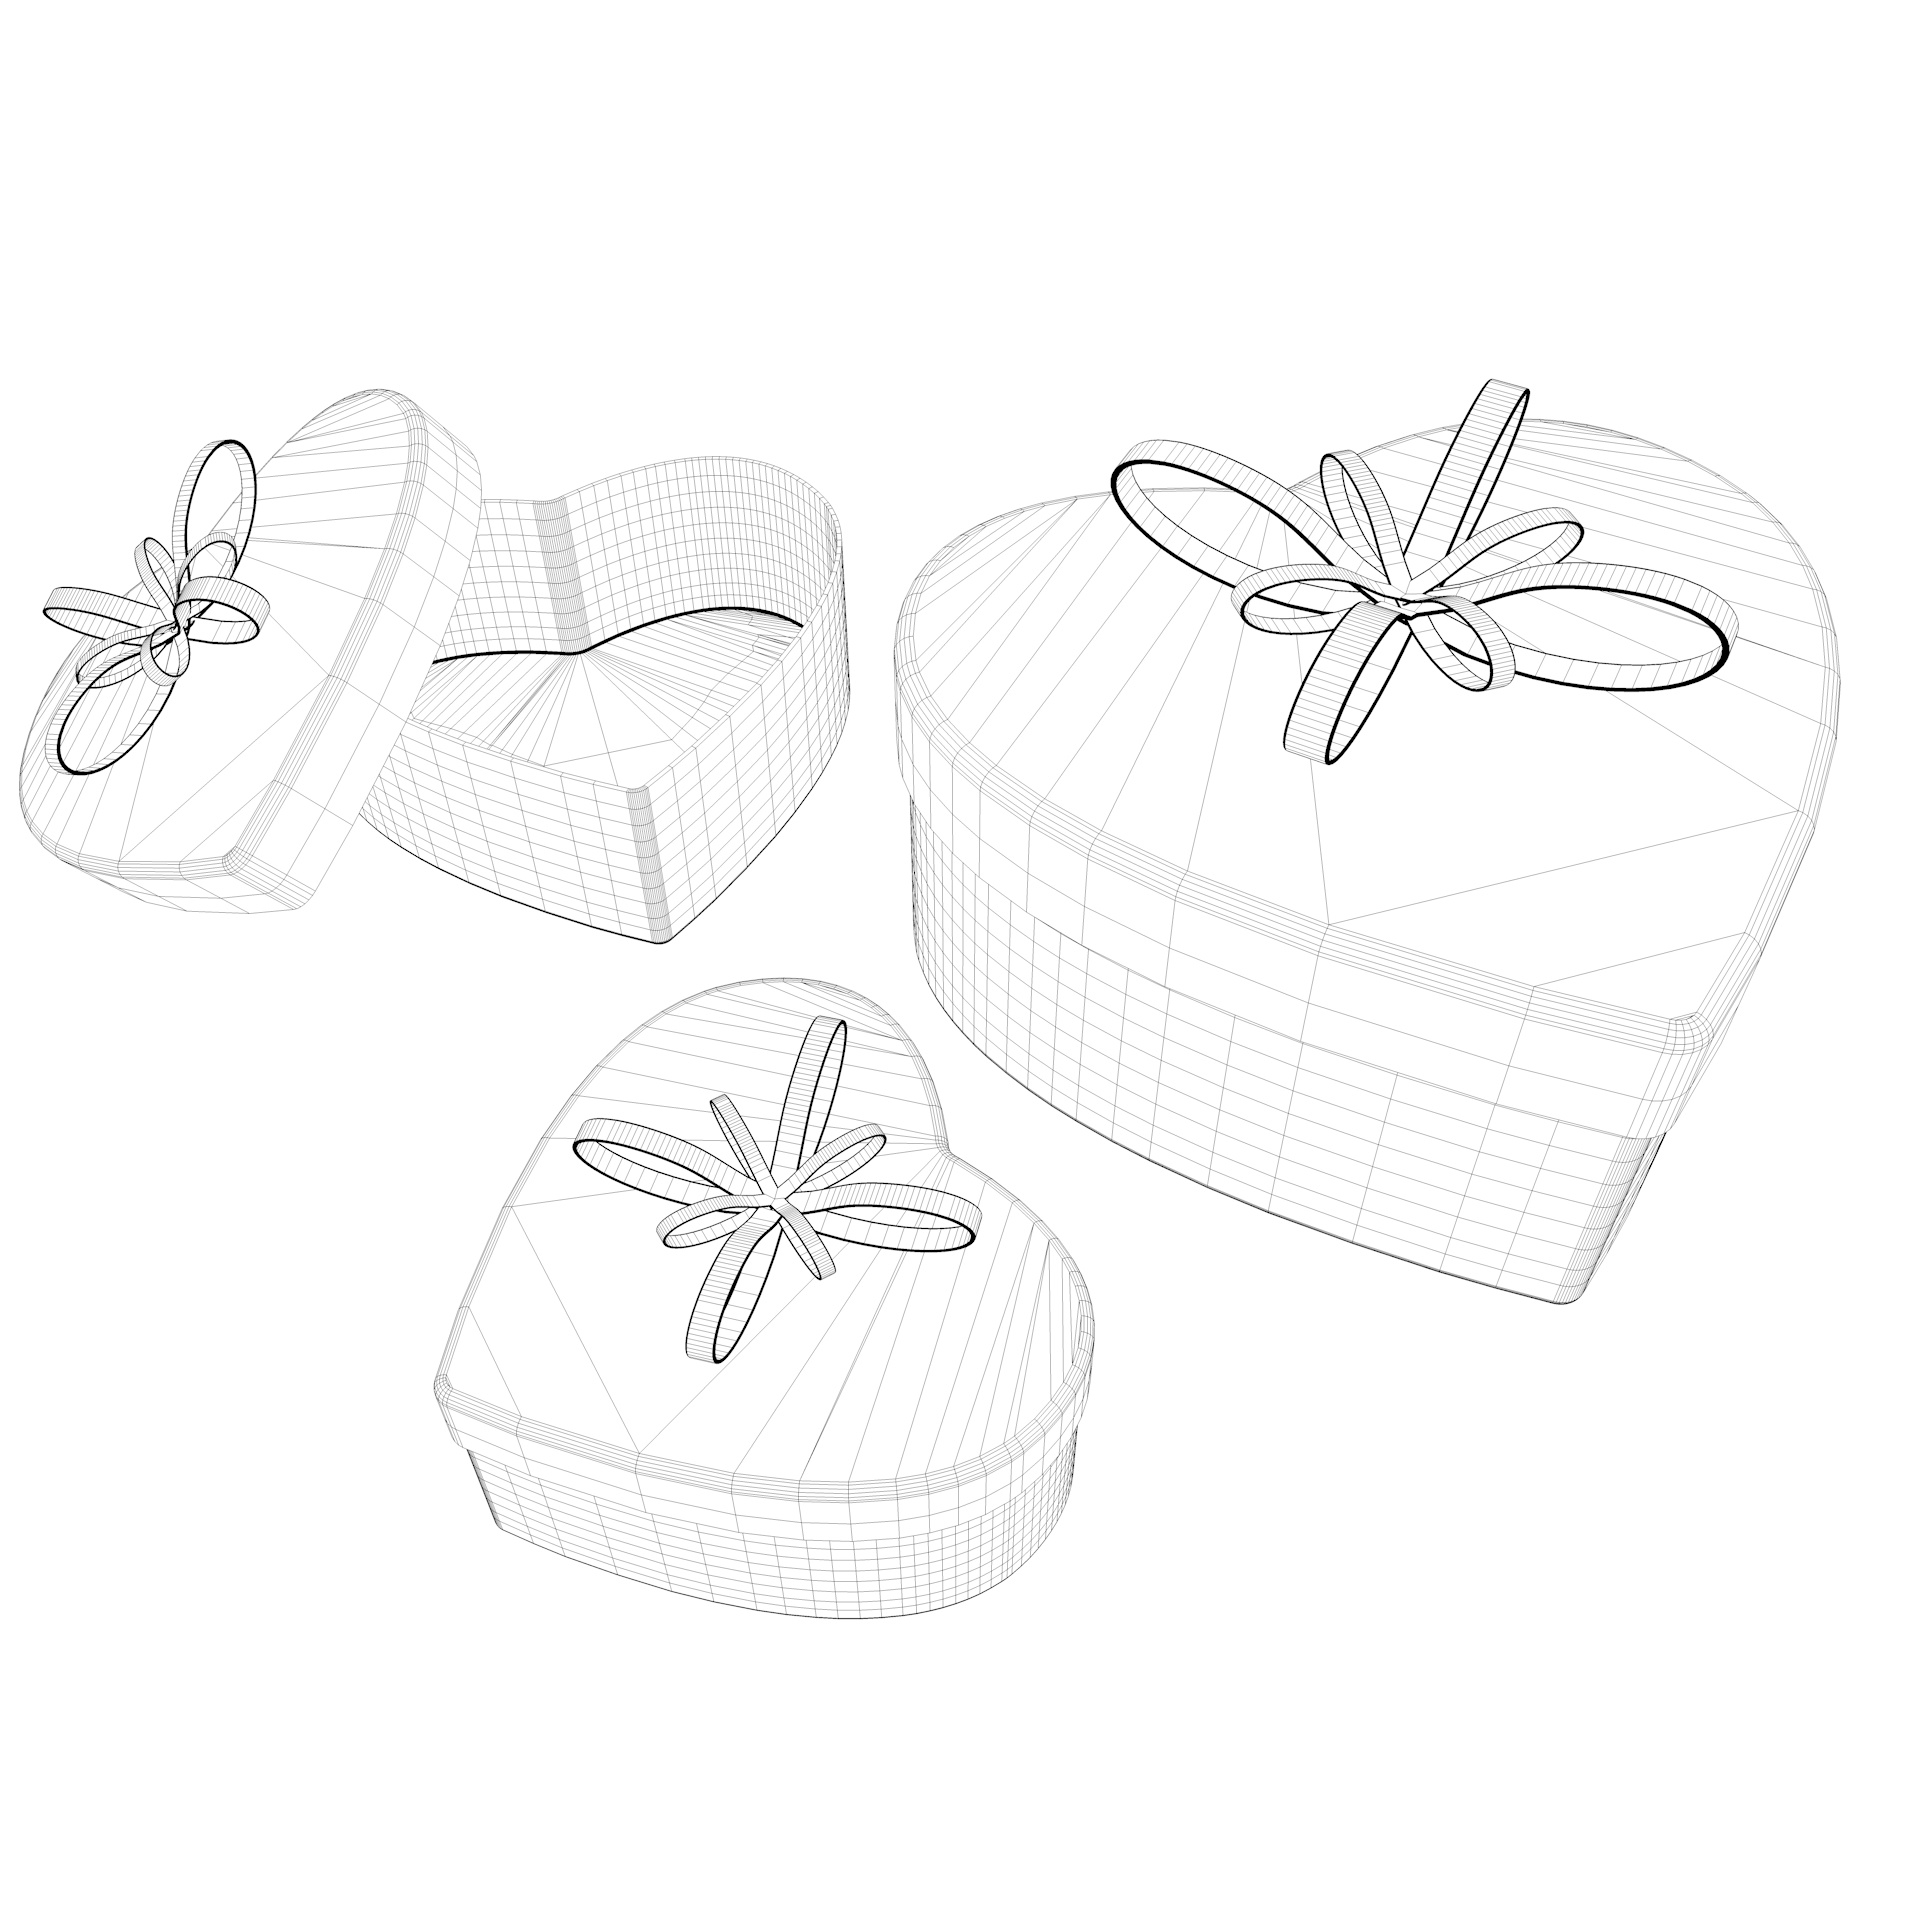 Heart shape gift box 3d model